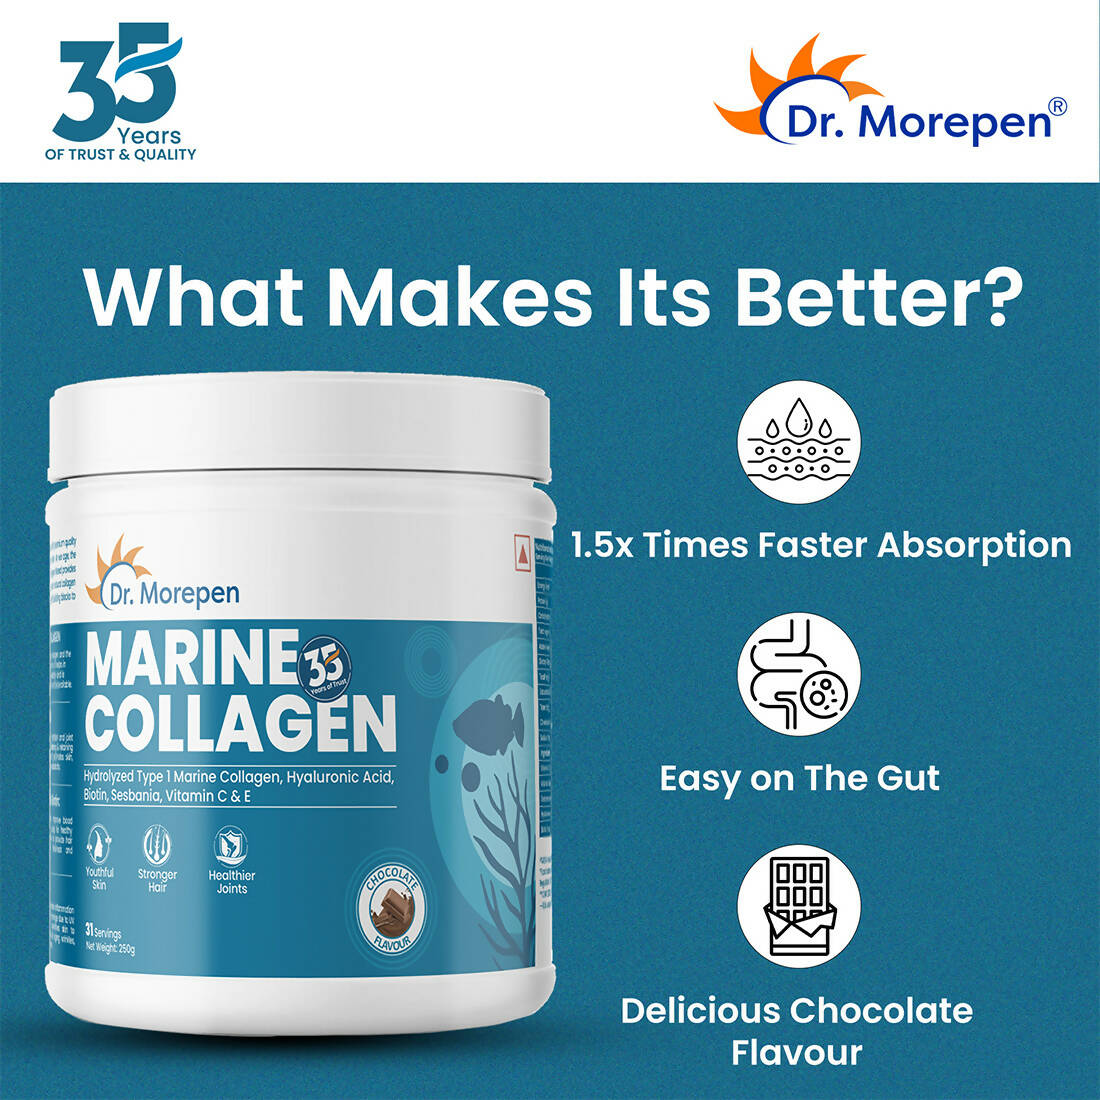 Dr. Morepen Marine Collagen Skin Protein Powder - Distacart